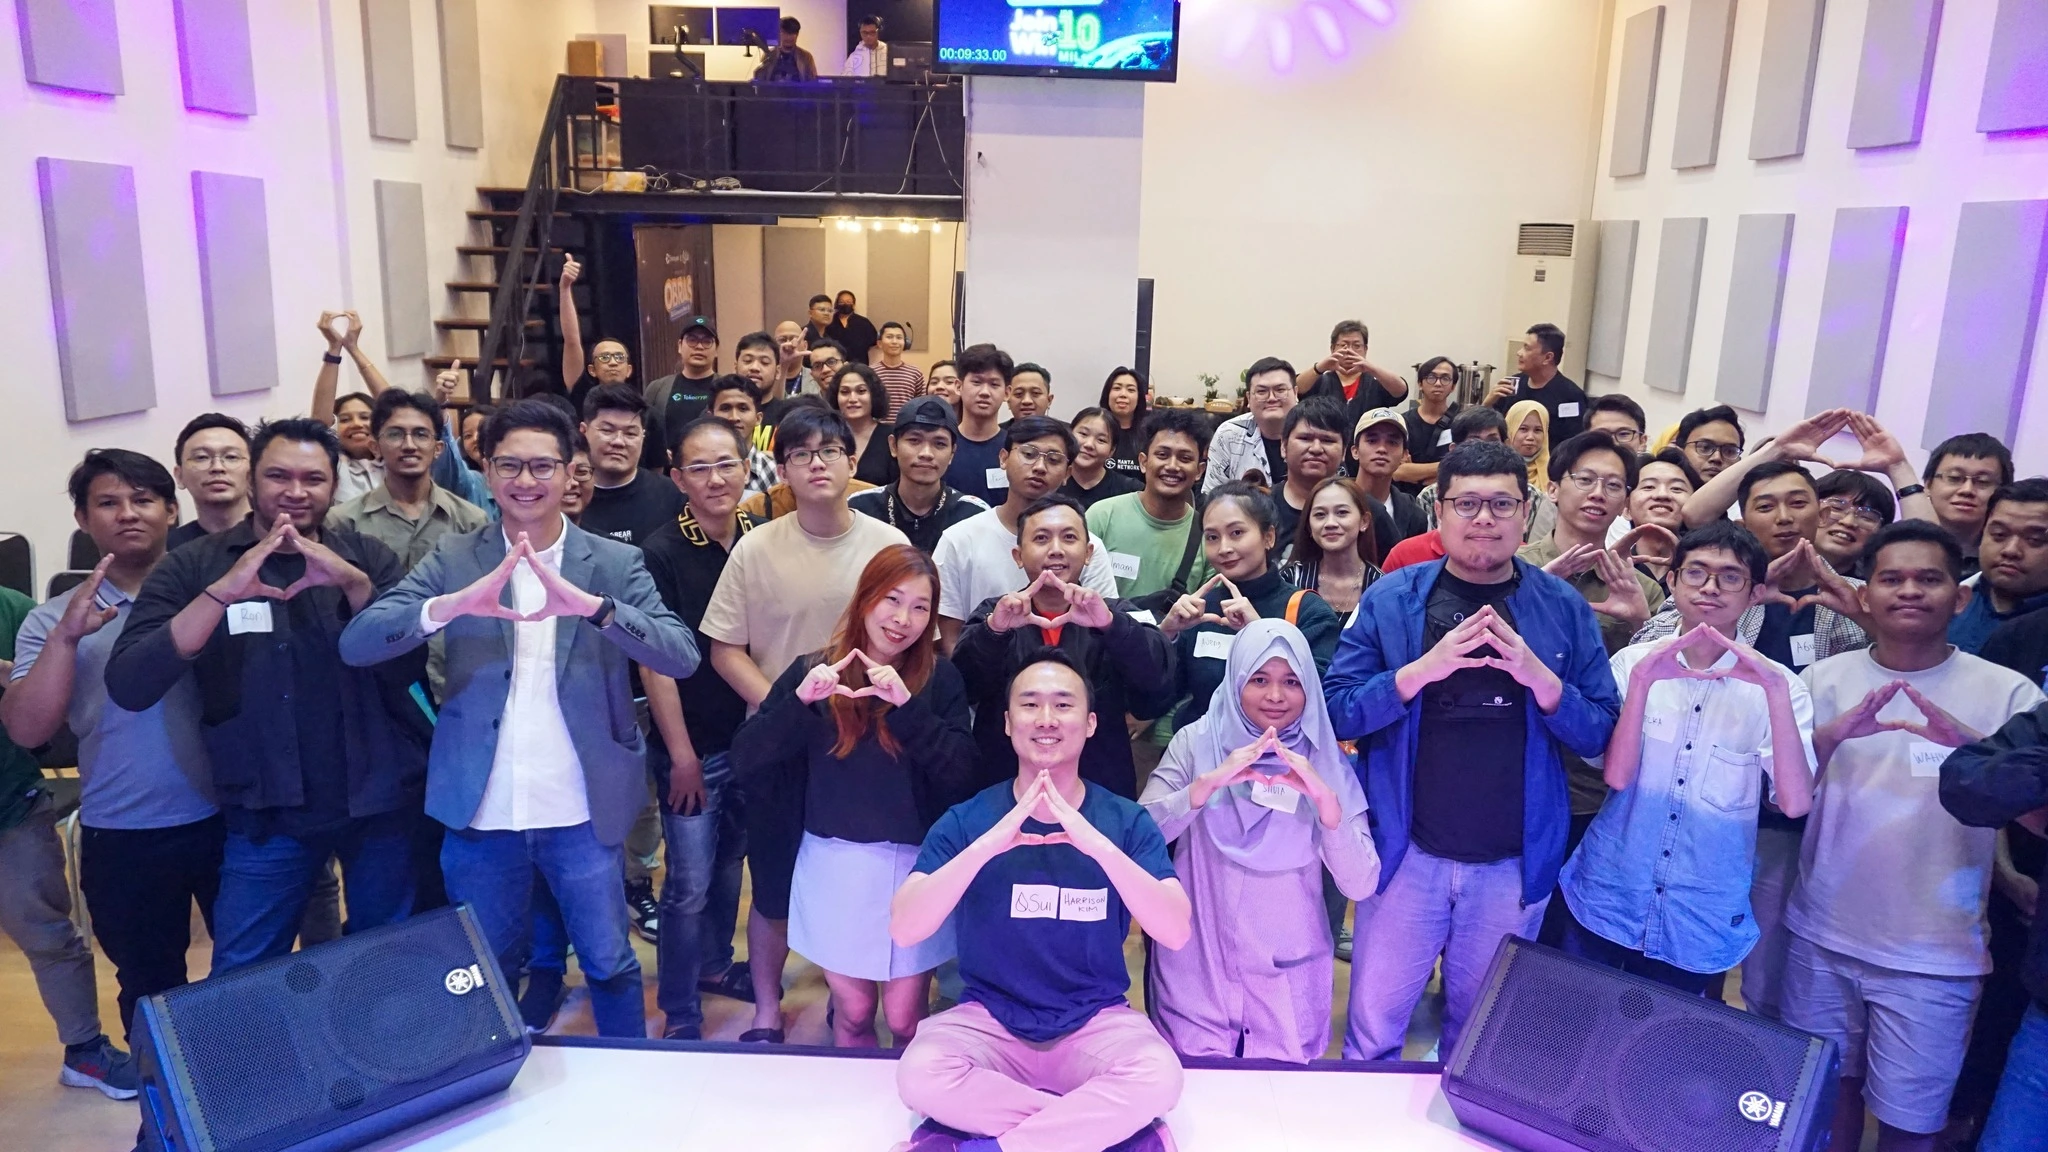 Keseruan peserta OBRAS: SUI Community Meetup di Jakarta. SUmber: Tokocrypto.